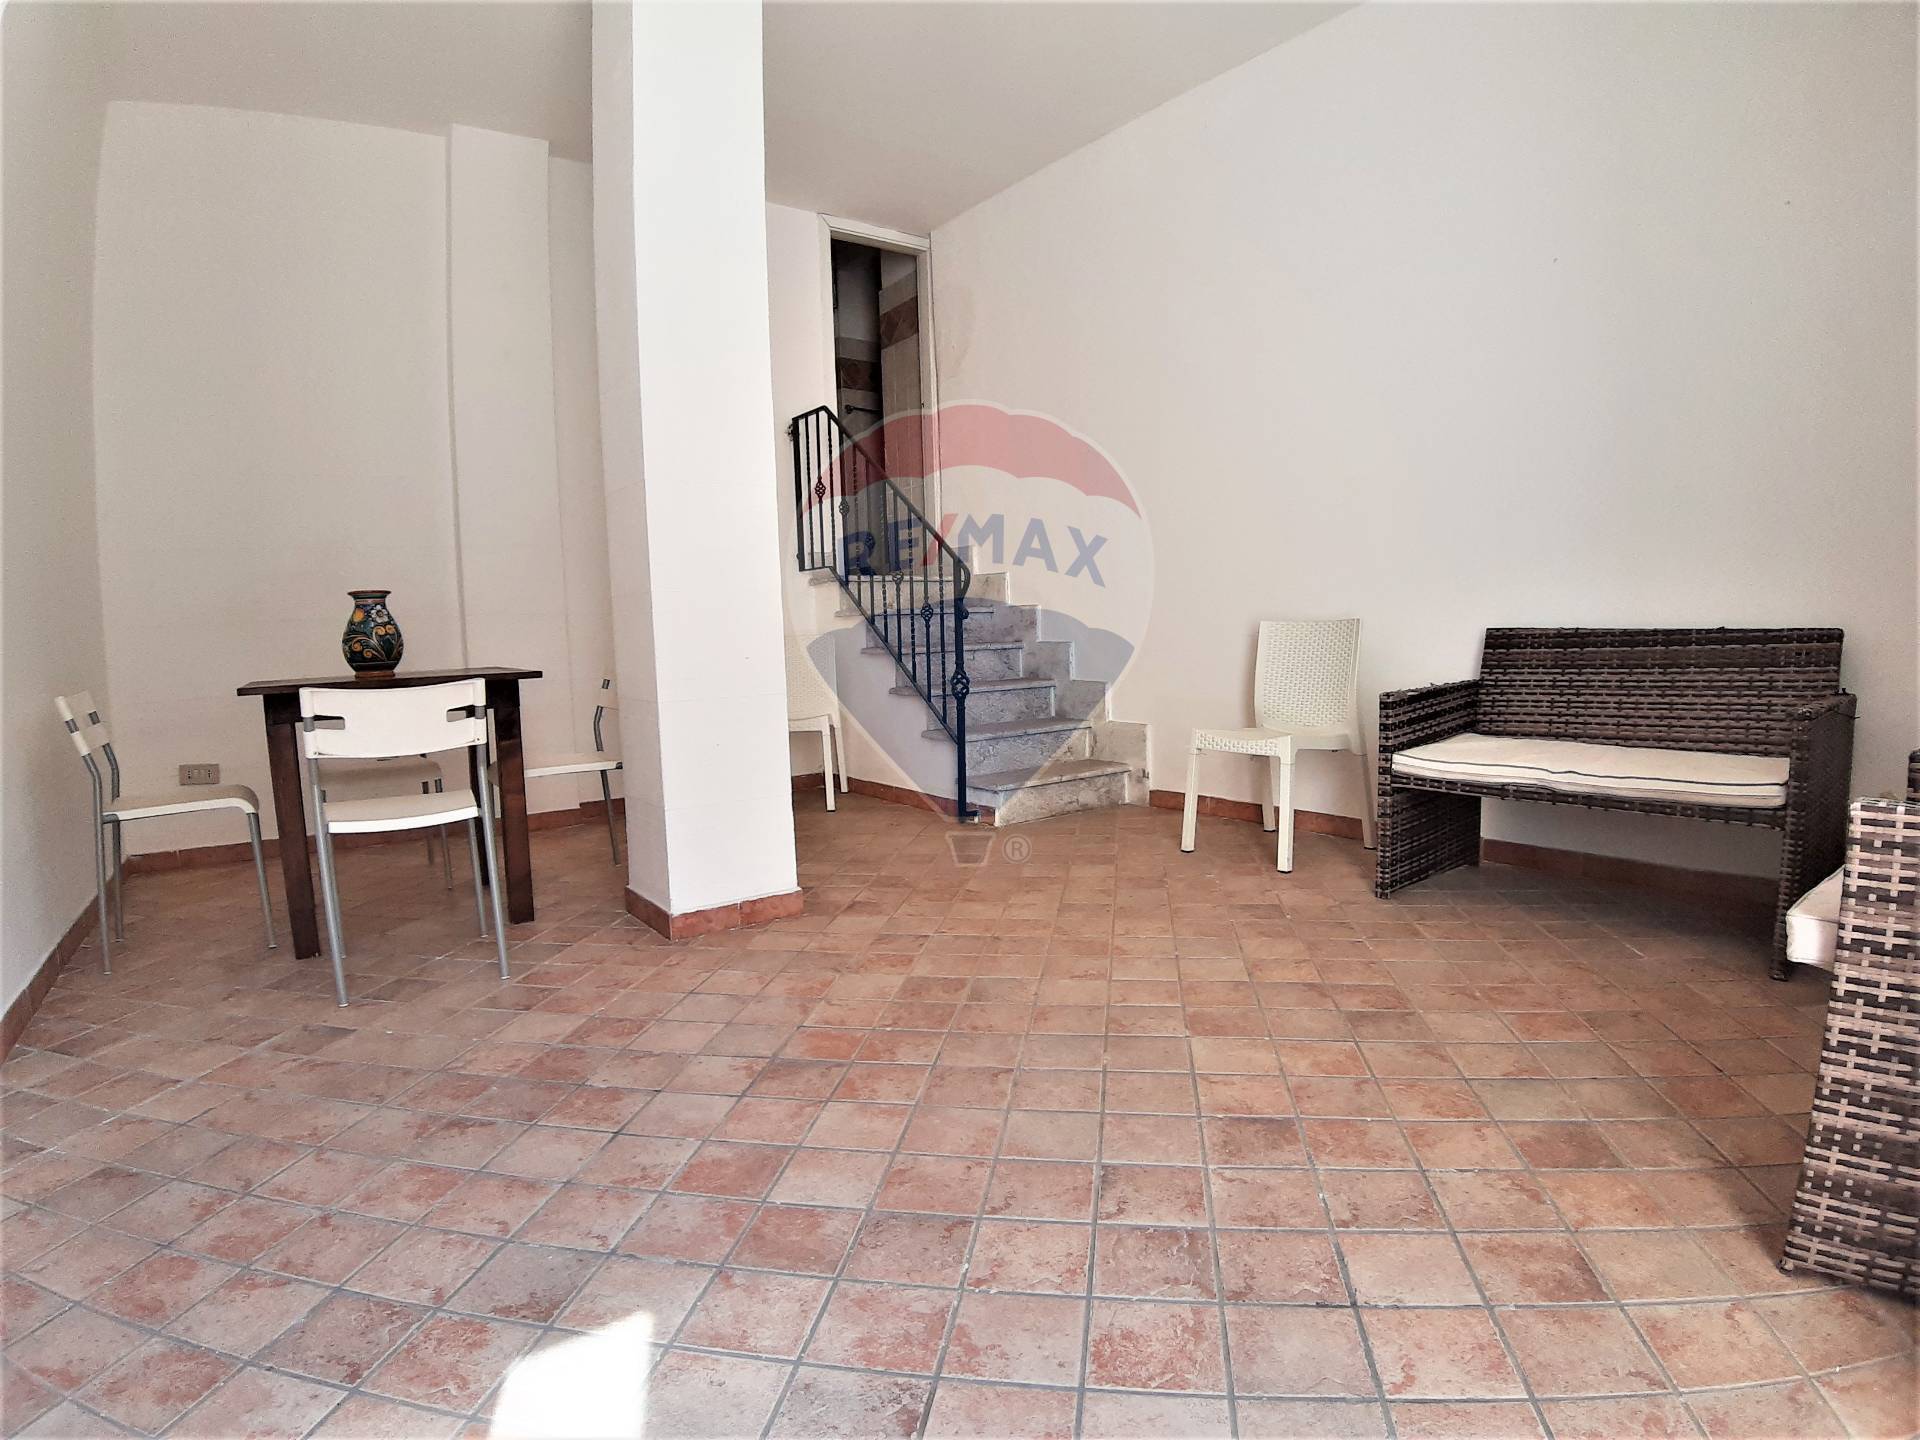 Soluzione Indipendente in vendita a Giardini-Naxos, 2 locali, zona Località: Centro, prezzo € 98.000 | CambioCasa.it